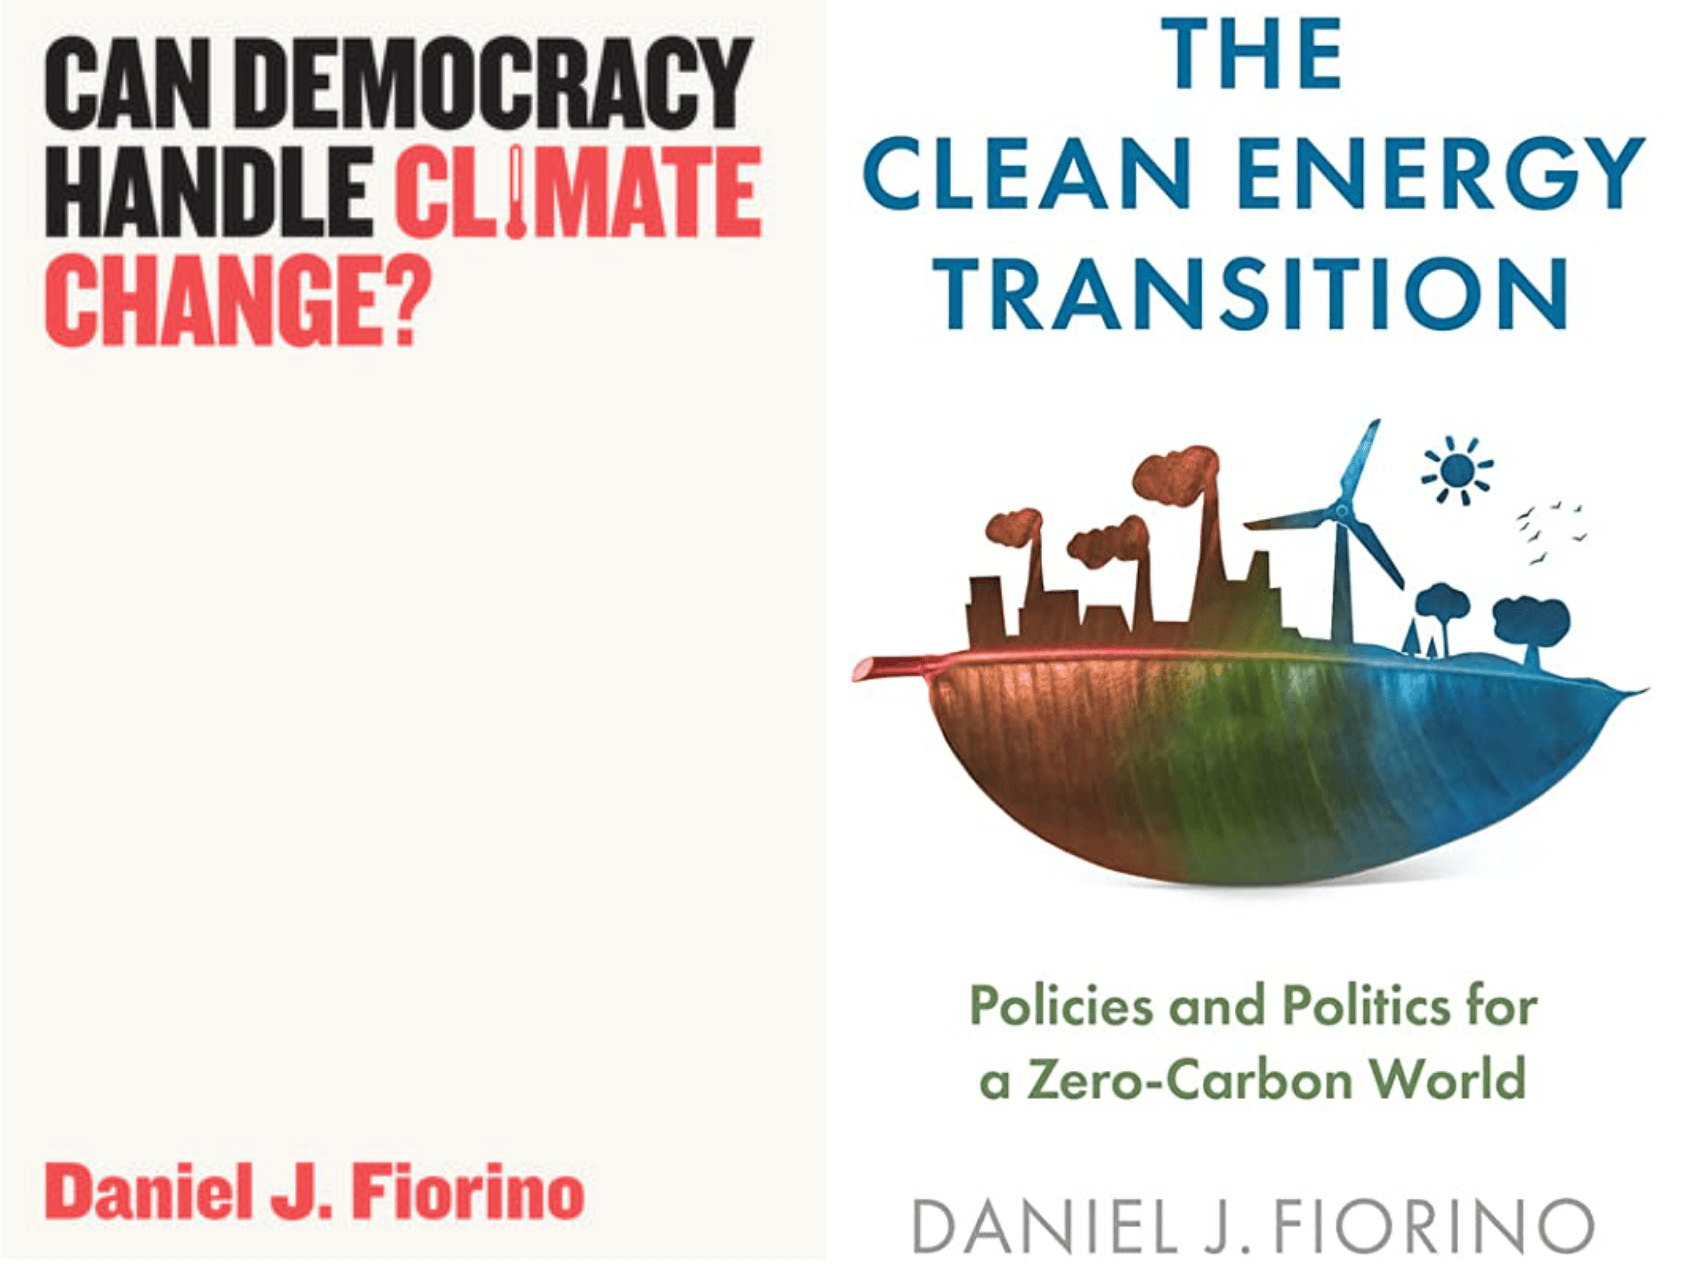 okładki dwóch książek z angielskimi tytułami: Can democracy Handle Climate Change (zamiast I rysunek termometru) oraz The Clean Energy Transition (na okładce połówka planety, na jednej stronie dymiące kominy fabryczne, na drugiej wiatraki . zielona trawa i niebieska woda